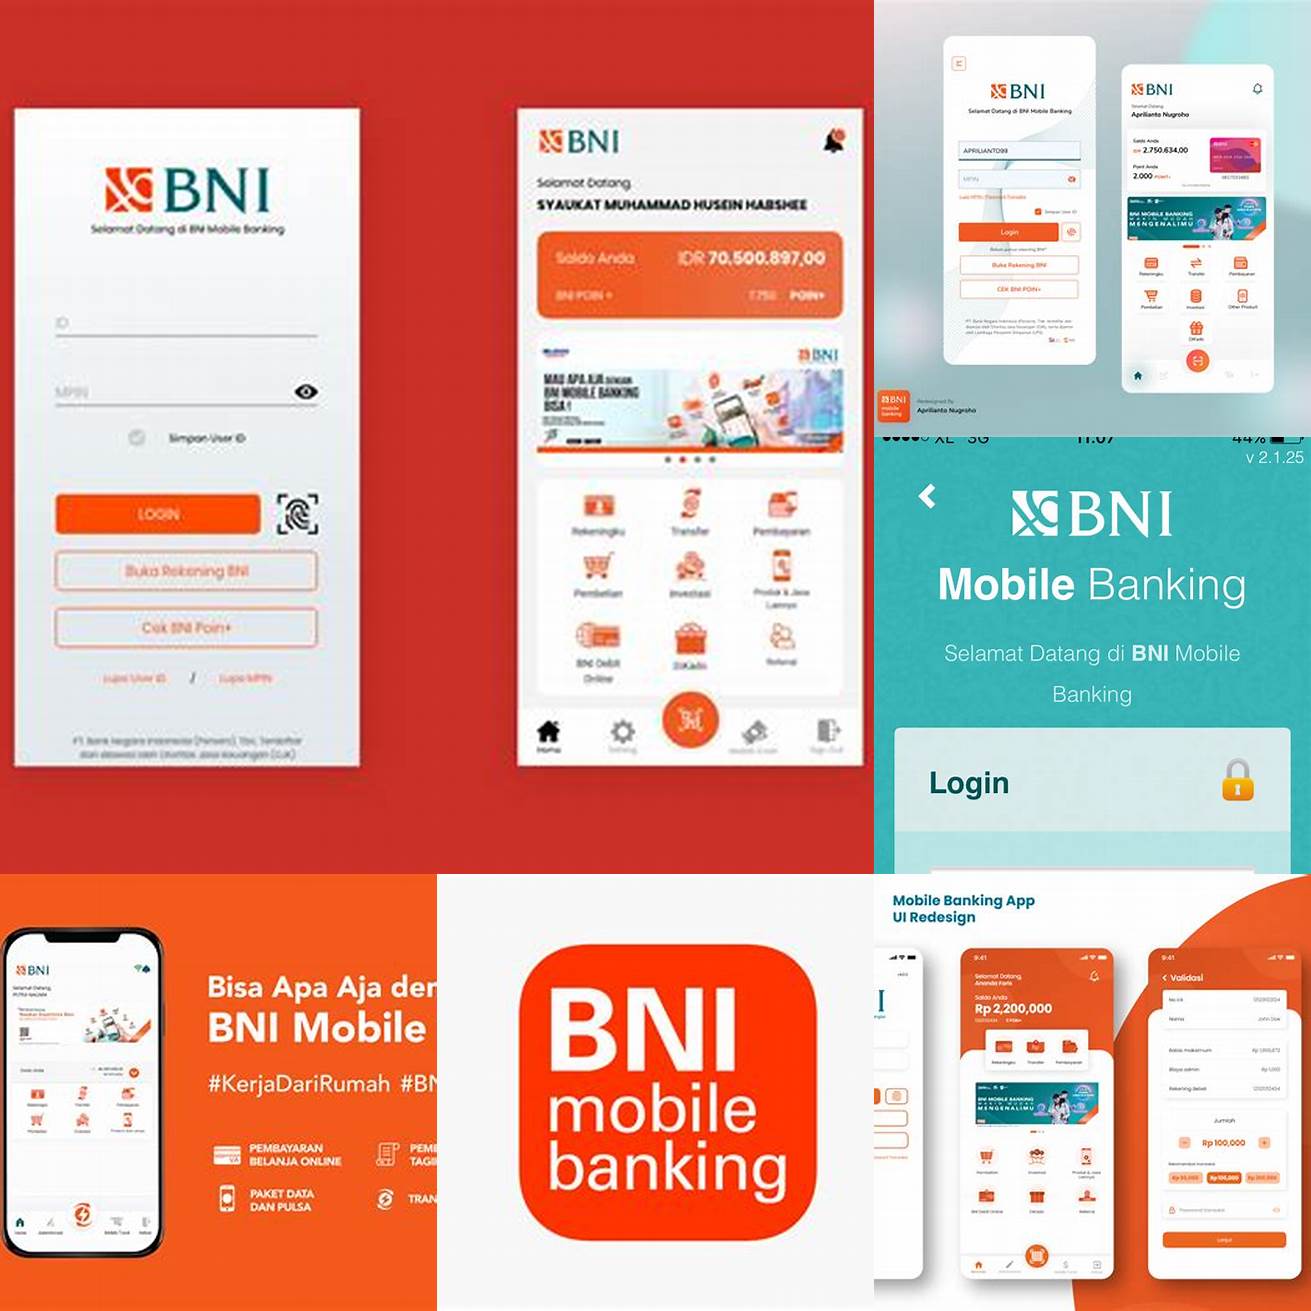 Mendownload aplikasi BNI Mobile Banking